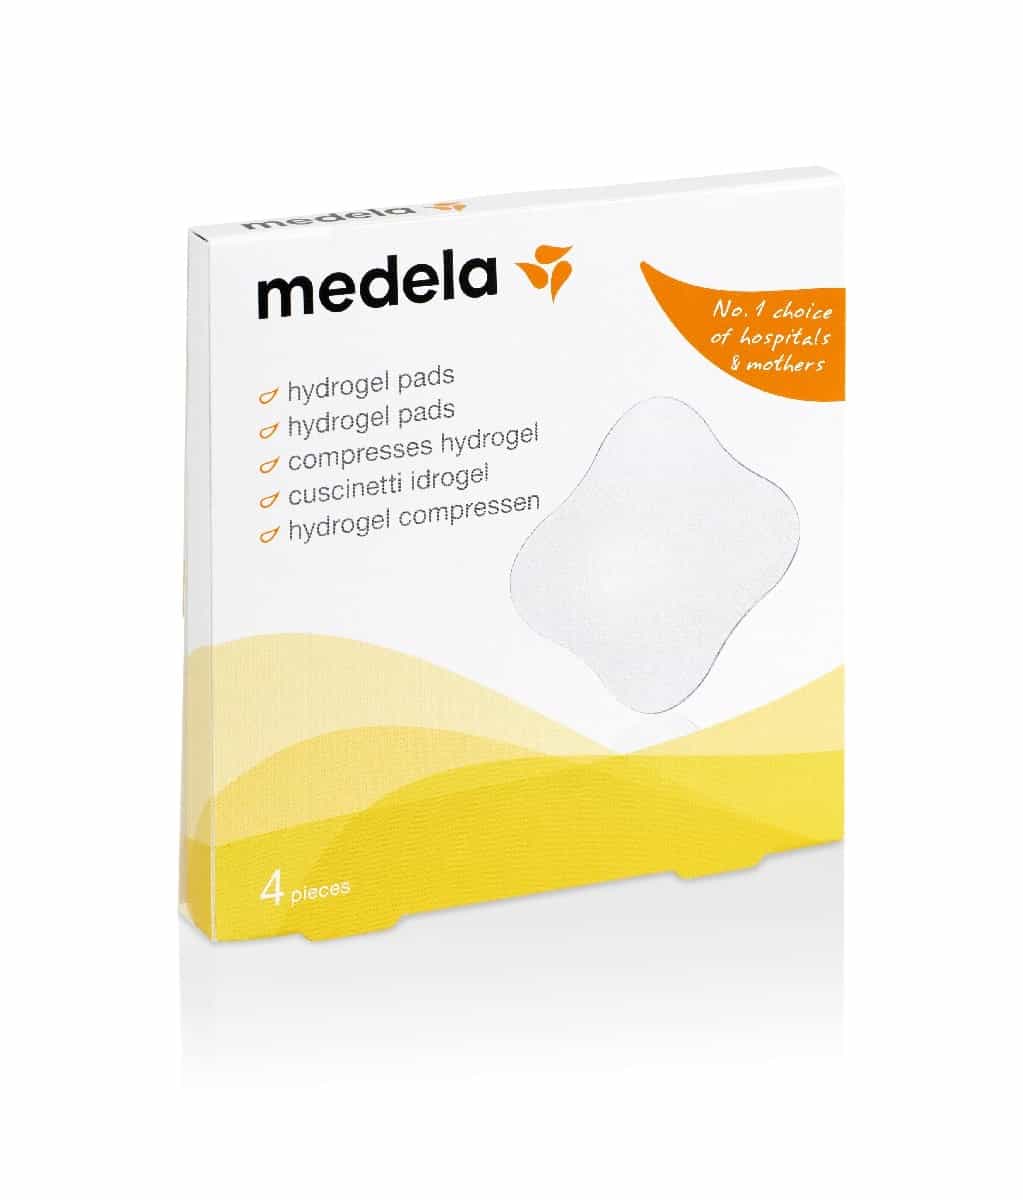 Medela Tender Care Hydrogel Review 